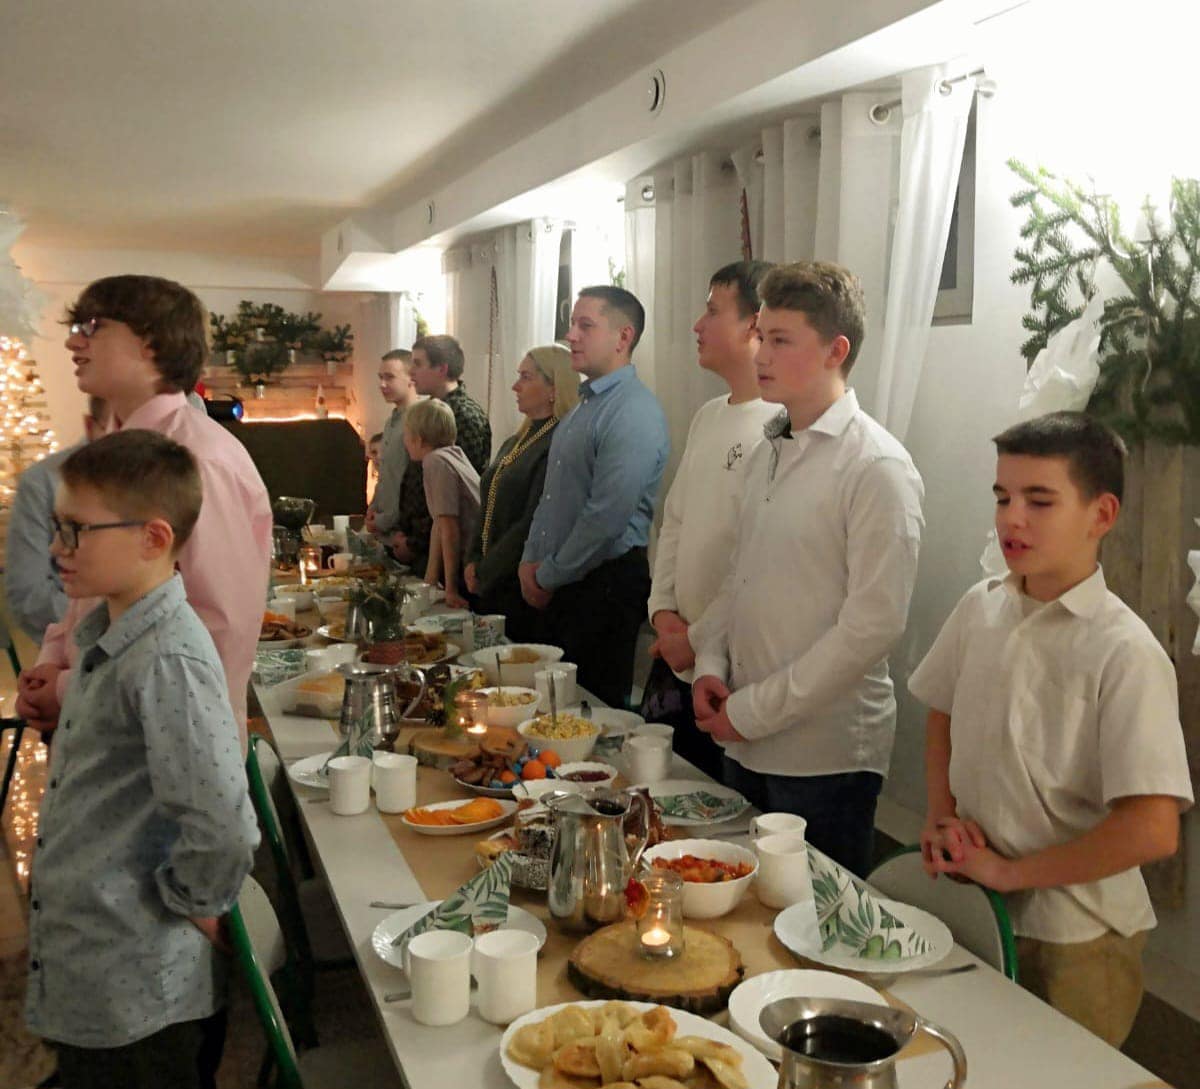 Na zdjęciu widoczni wychowankowie oraz wychowawcy MOS Stargard podczas kolacji wigilijnej w internacie chłopców w Kluczewie.